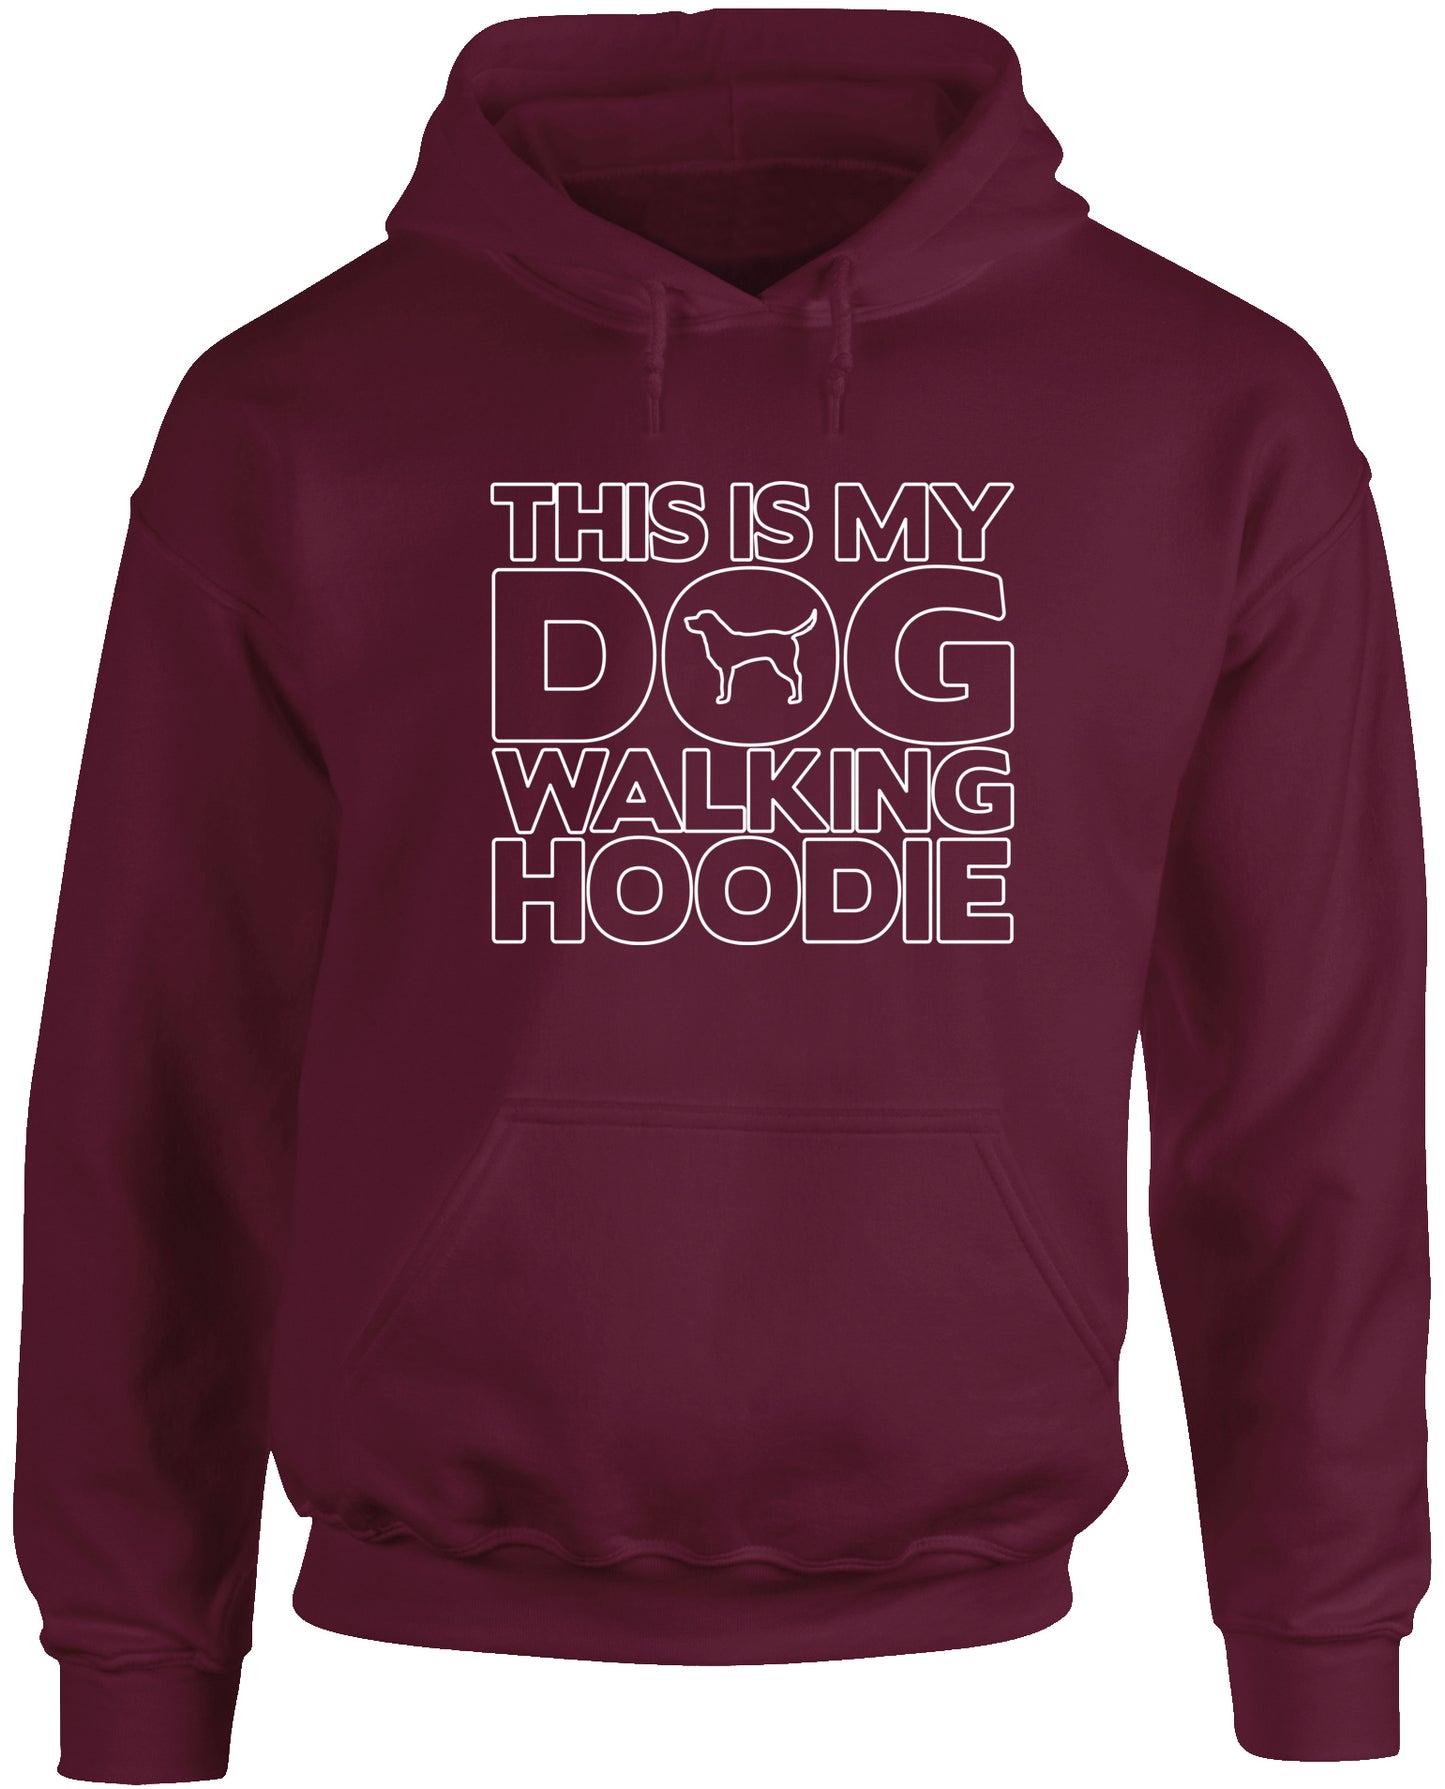 This Is My Dog Walking Hoodie unisex Hoodie hooded top